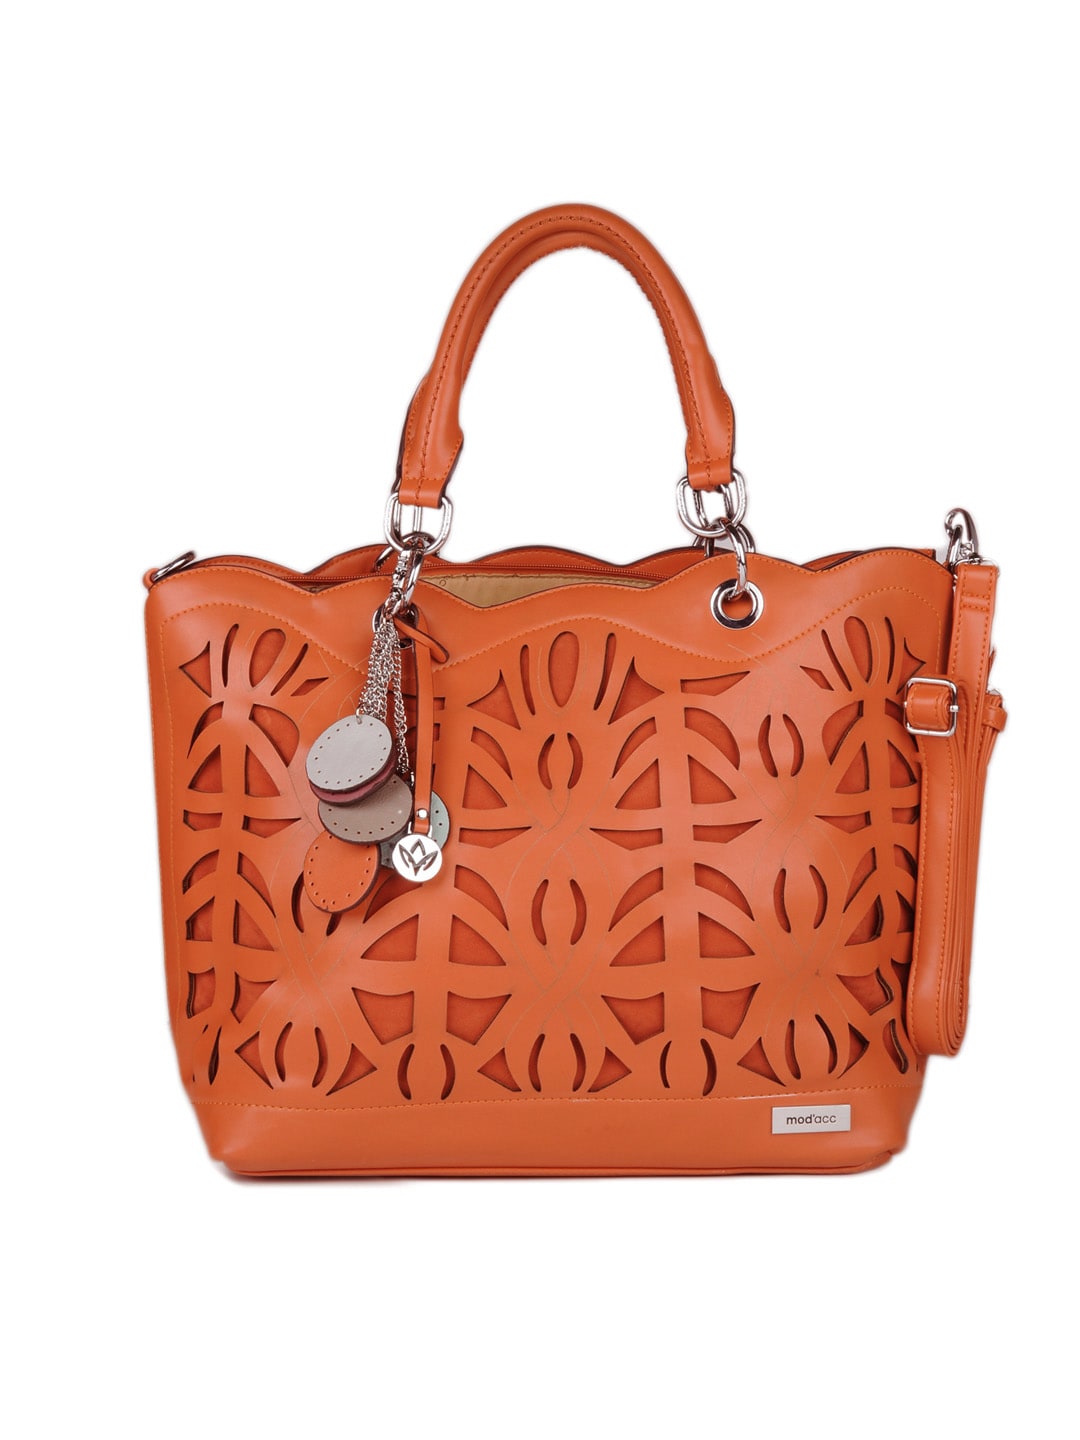 Mod'acc Women Orange Handbag